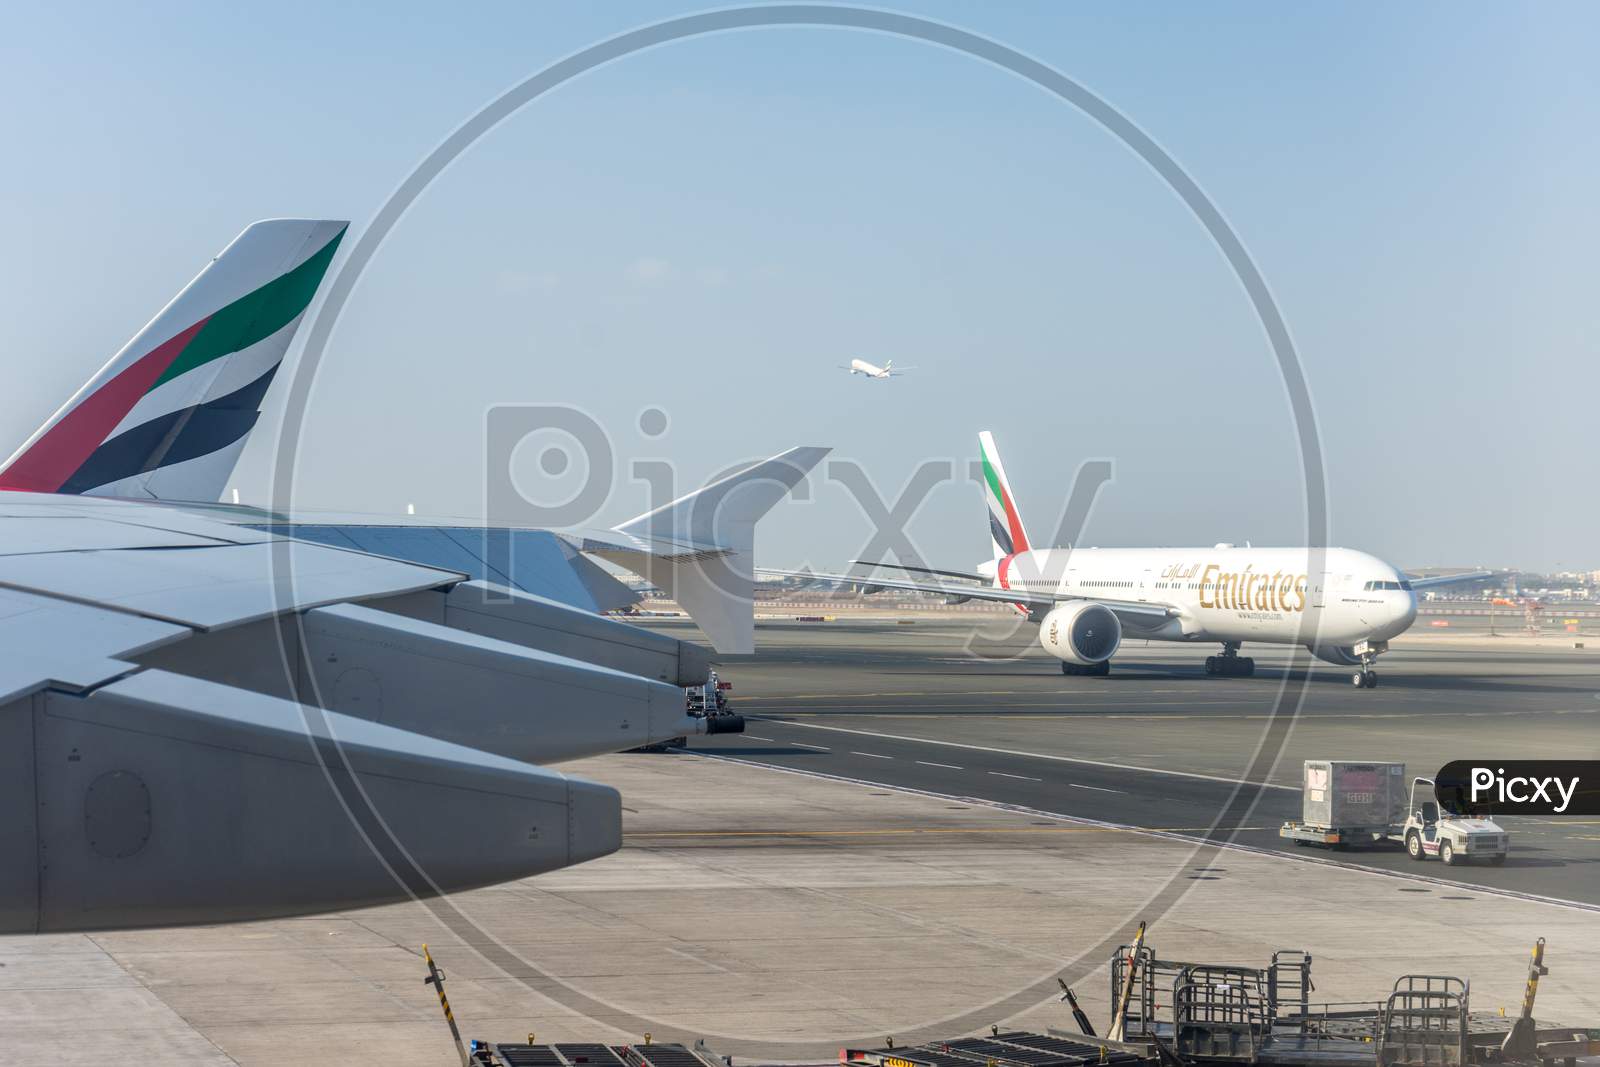 Dubai, Emirates - 18 November 2018: View Of Emirates Plane Through A Window